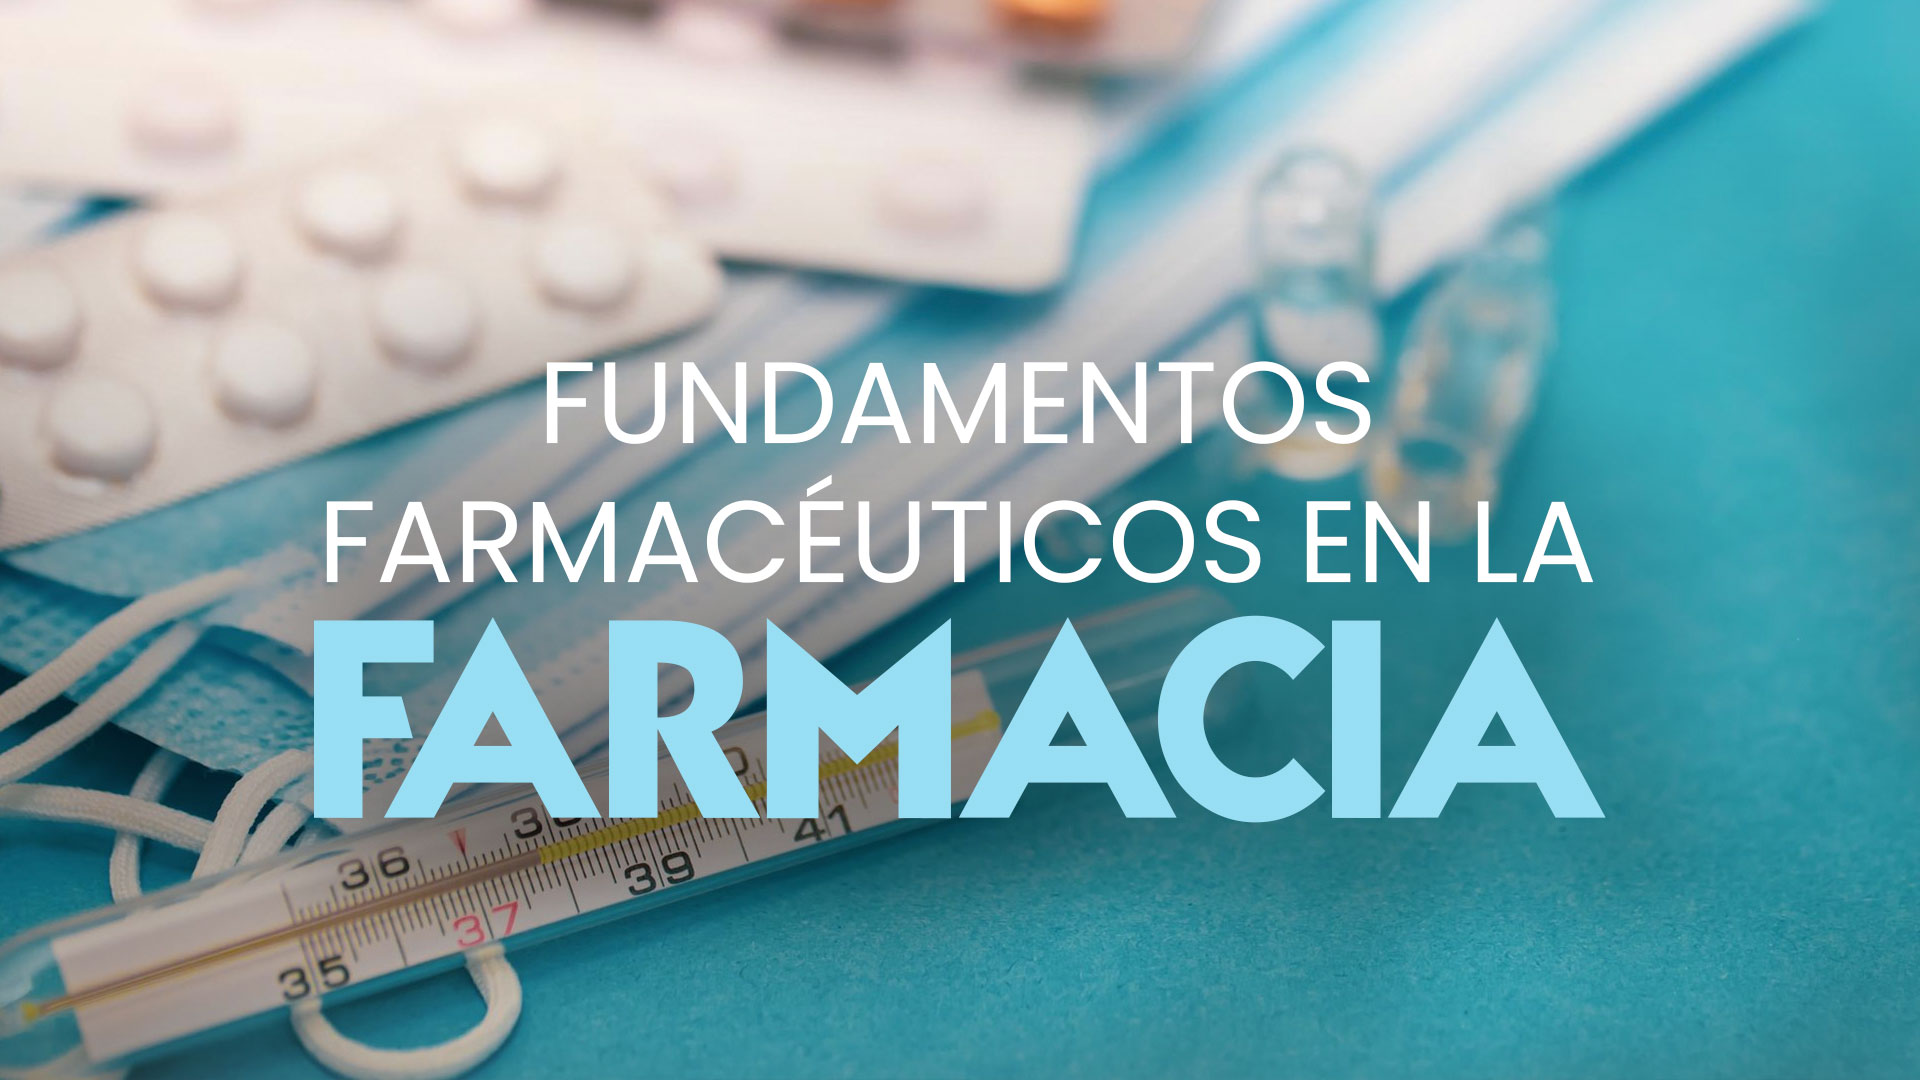 Fundamentos farmacéuticos en la farmacia